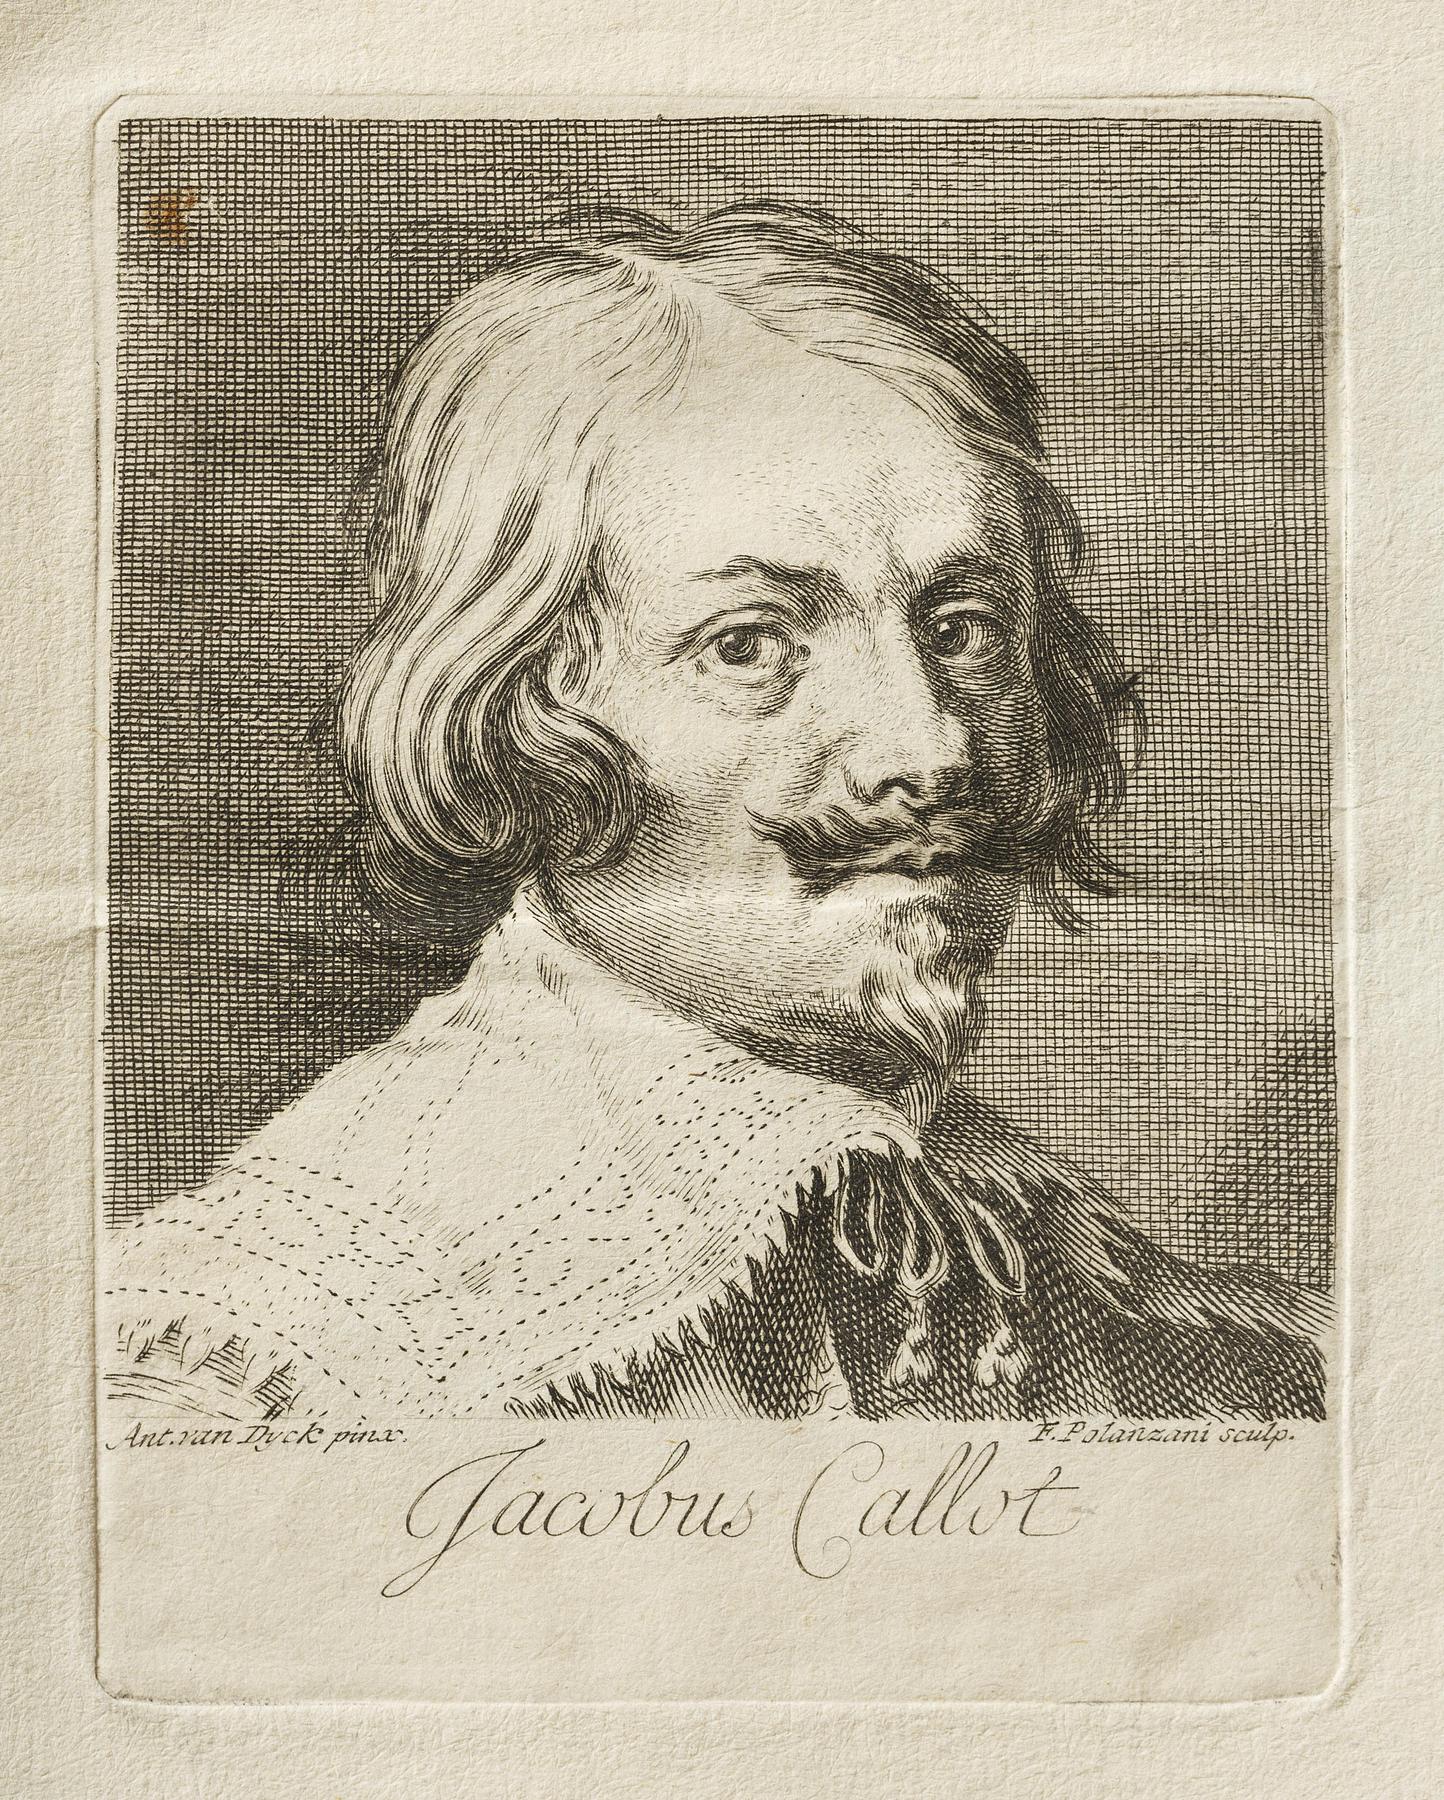 Jacobus Collot, E325,1